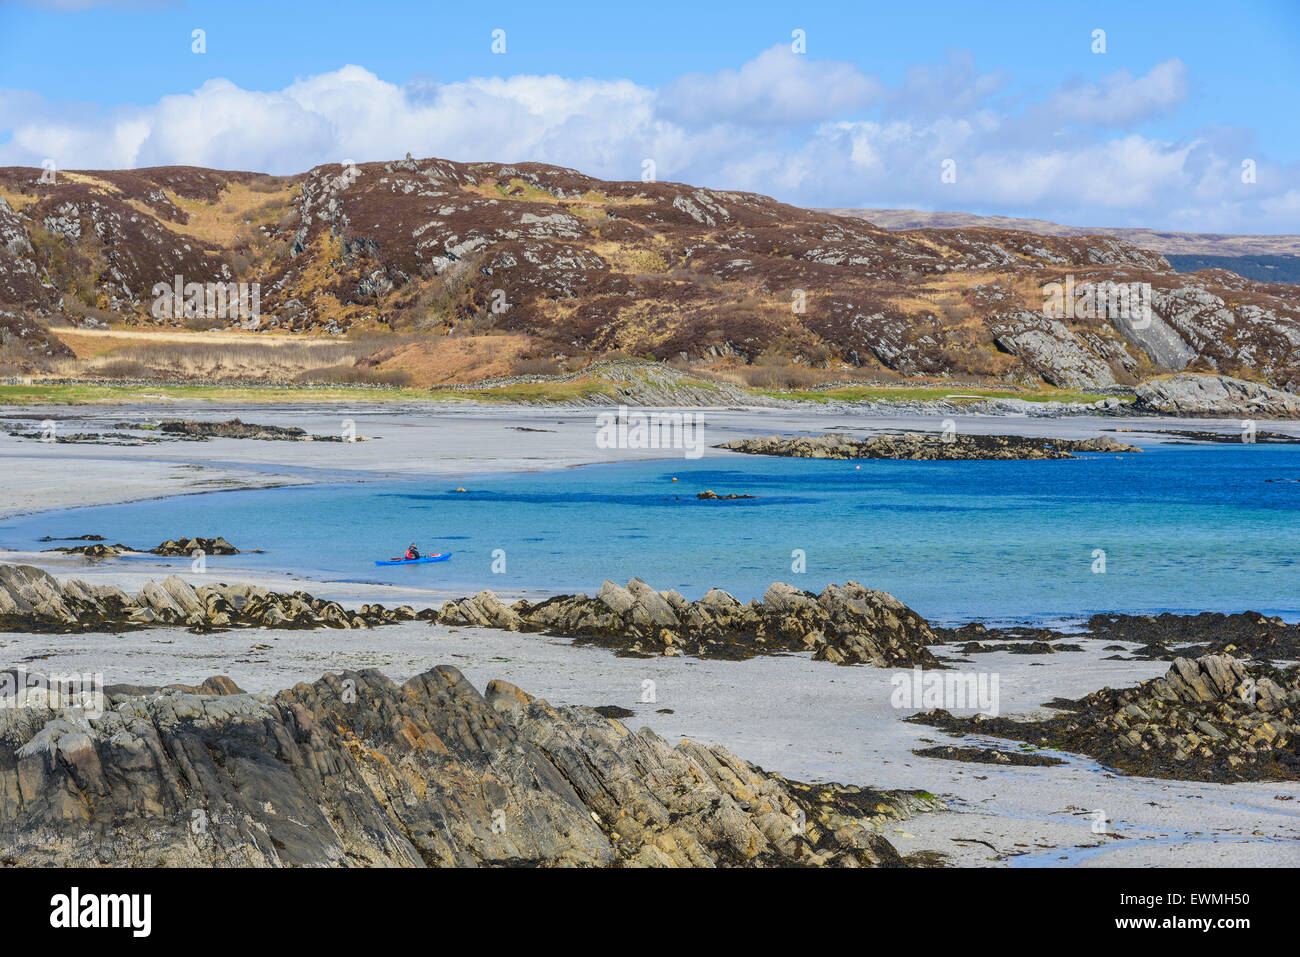 Kayakiste de mer au large de la plage, près de Bunessan Uisken, île de Mull, Hébrides, Argyll and Bute, Ecosse Banque D'Images